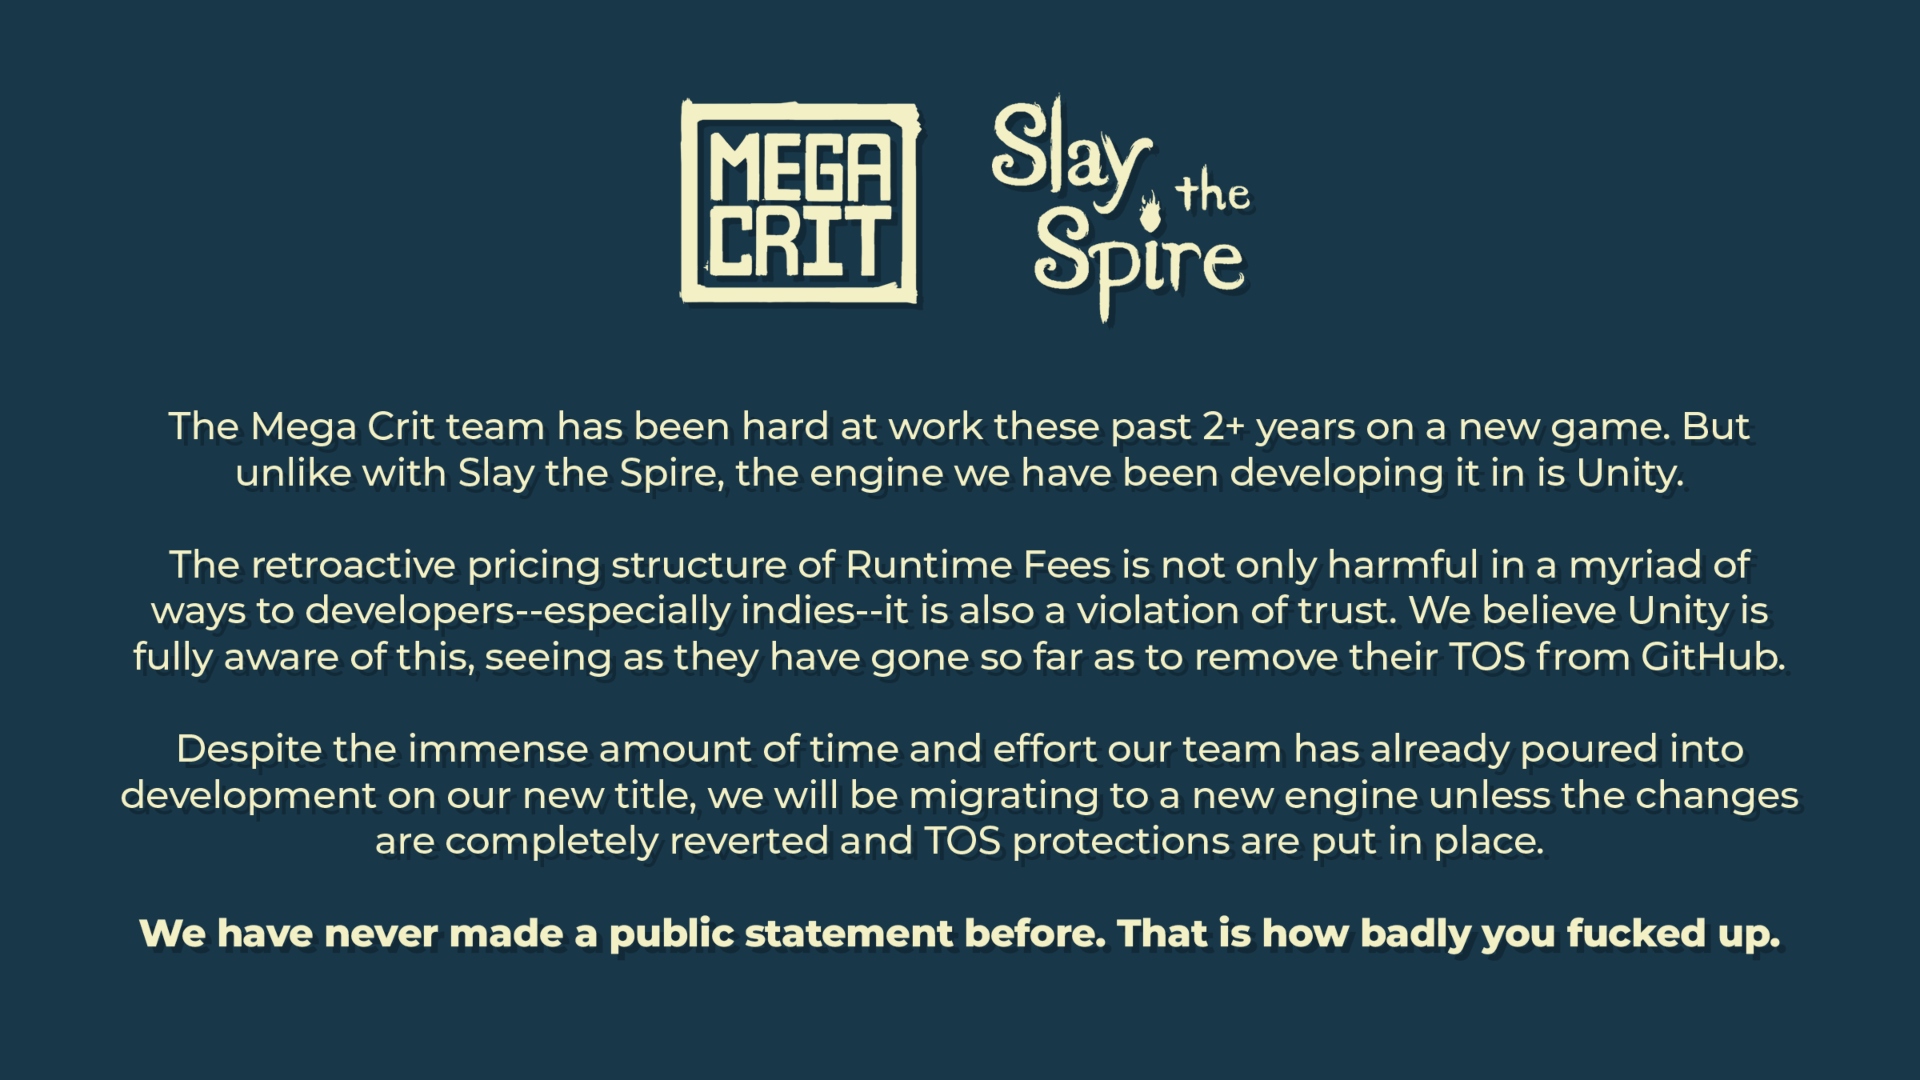 Slay the Spire Unity: Eine Aussage von Mega Crit, dem Schöpfer des Roguelike-Deckbuilding-Spiels Slay the Spire